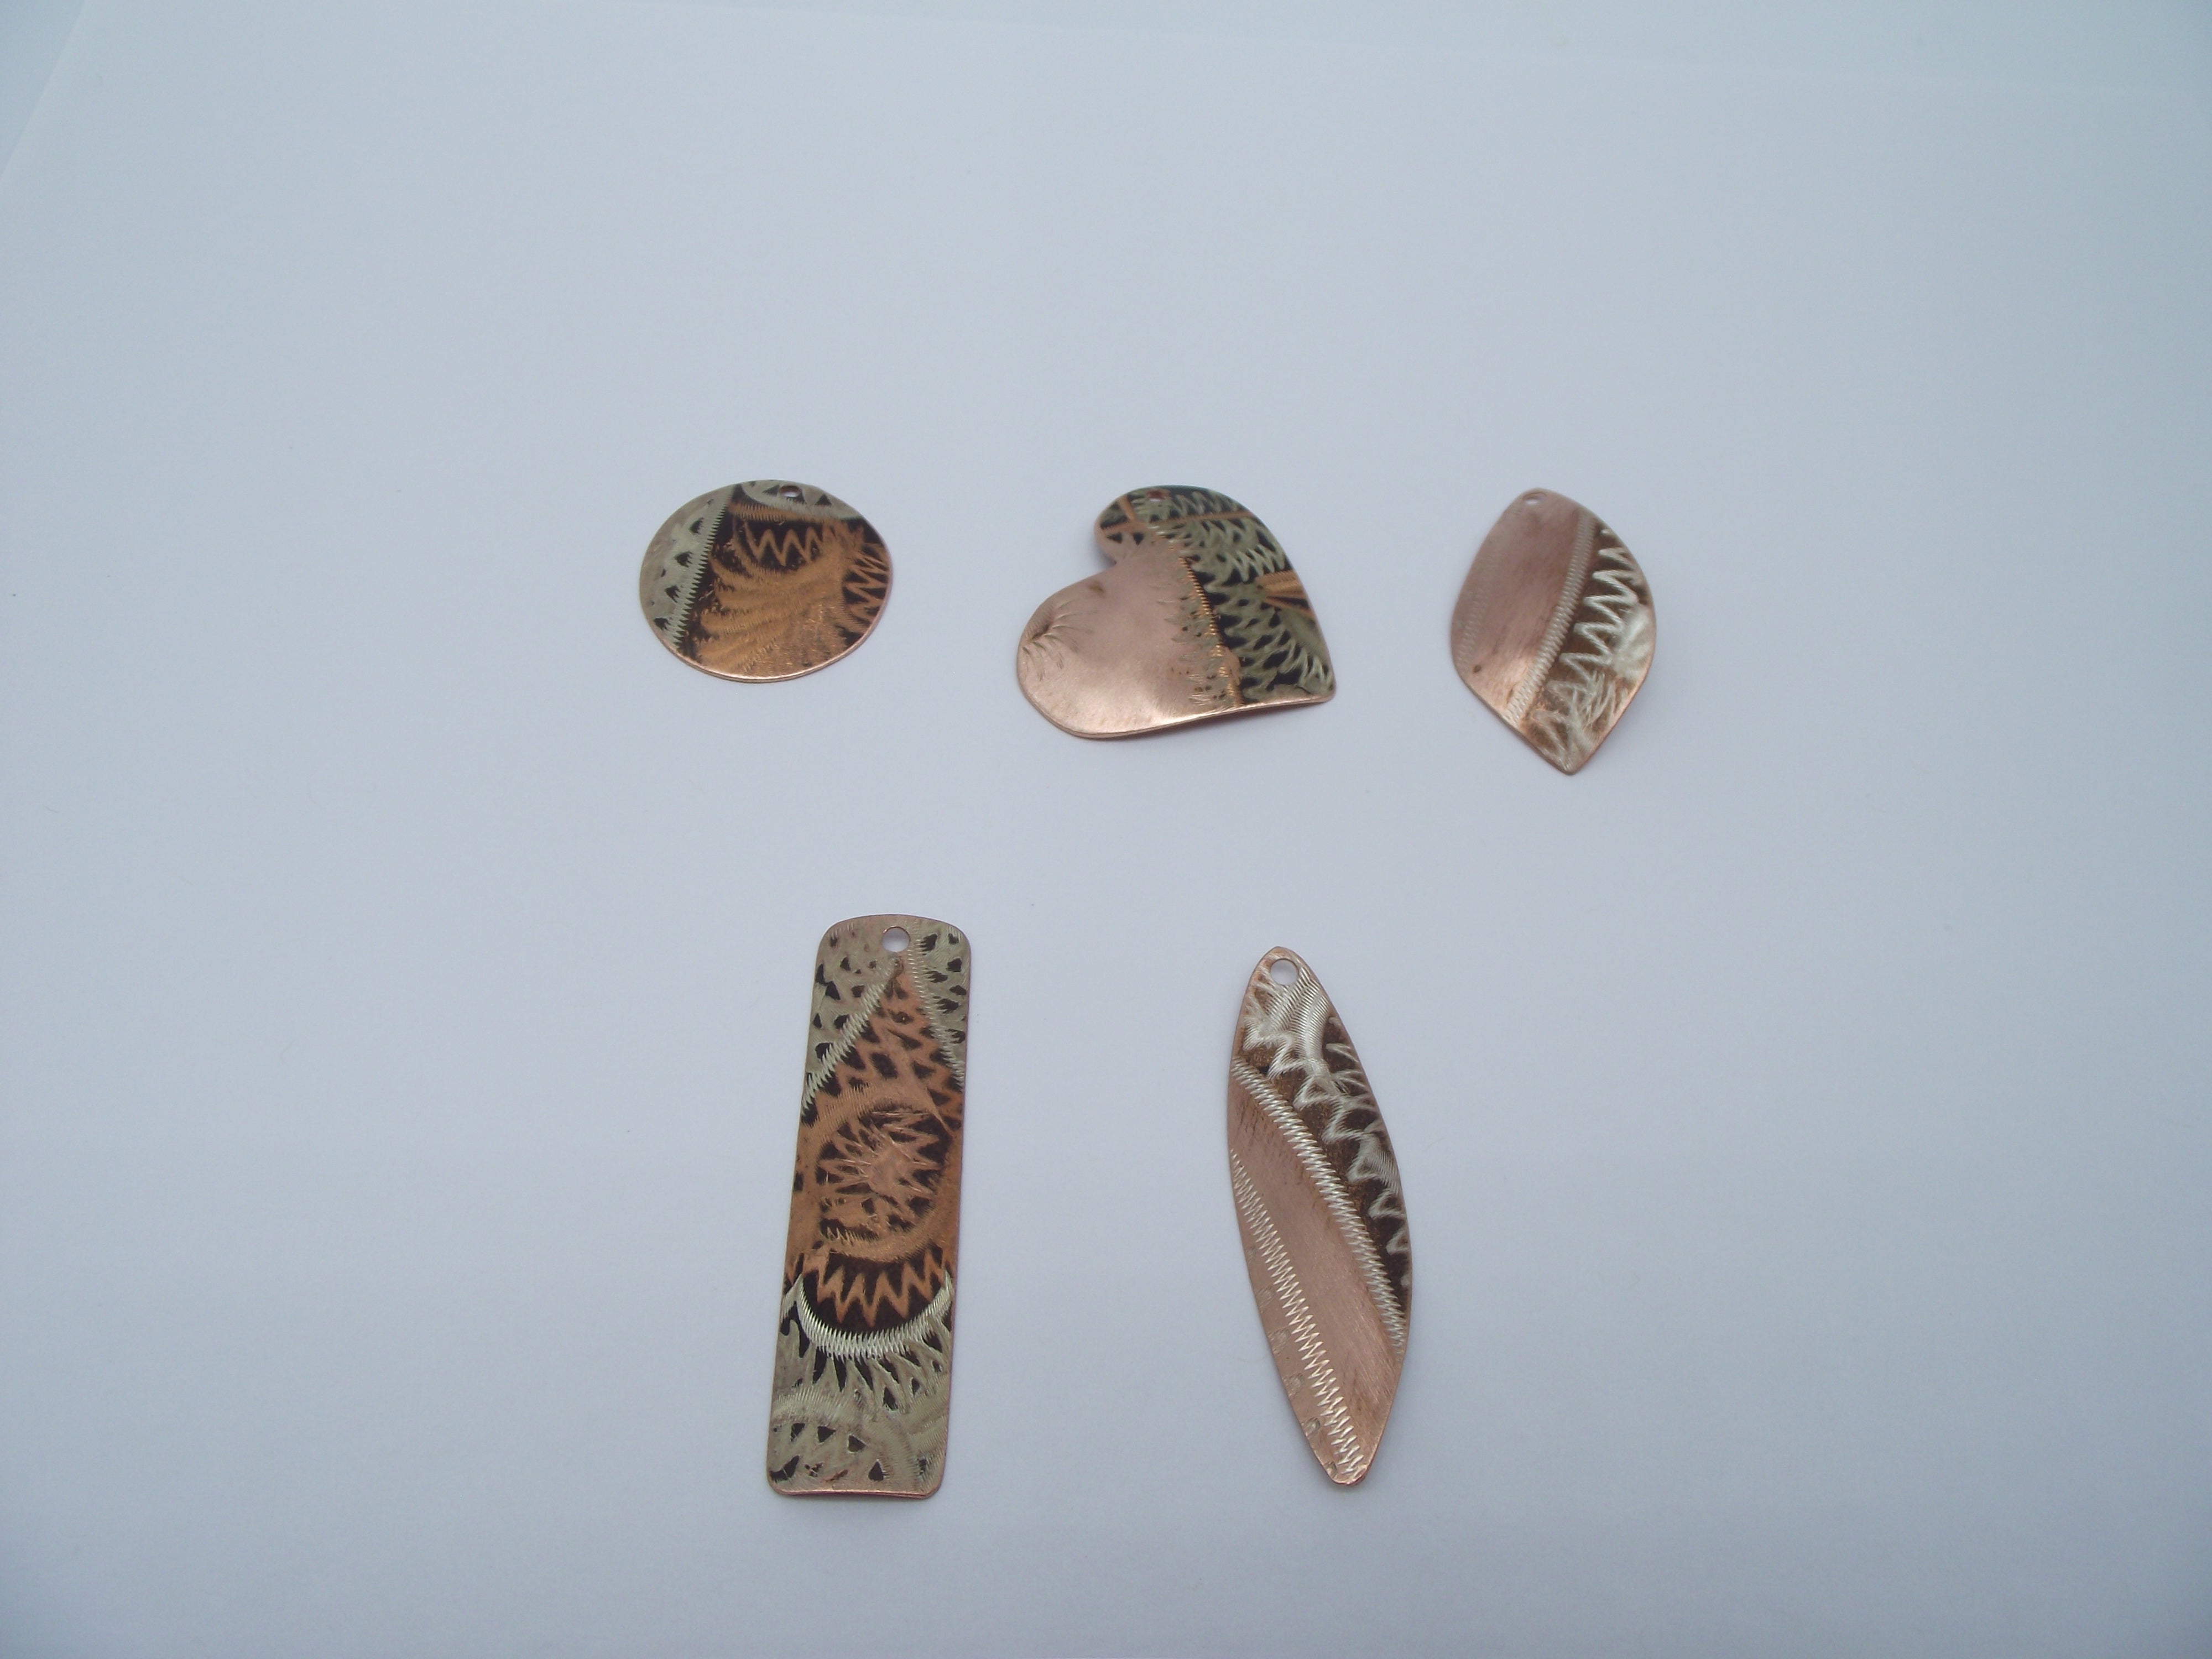 Simple Copper Necklaces-Wholesale